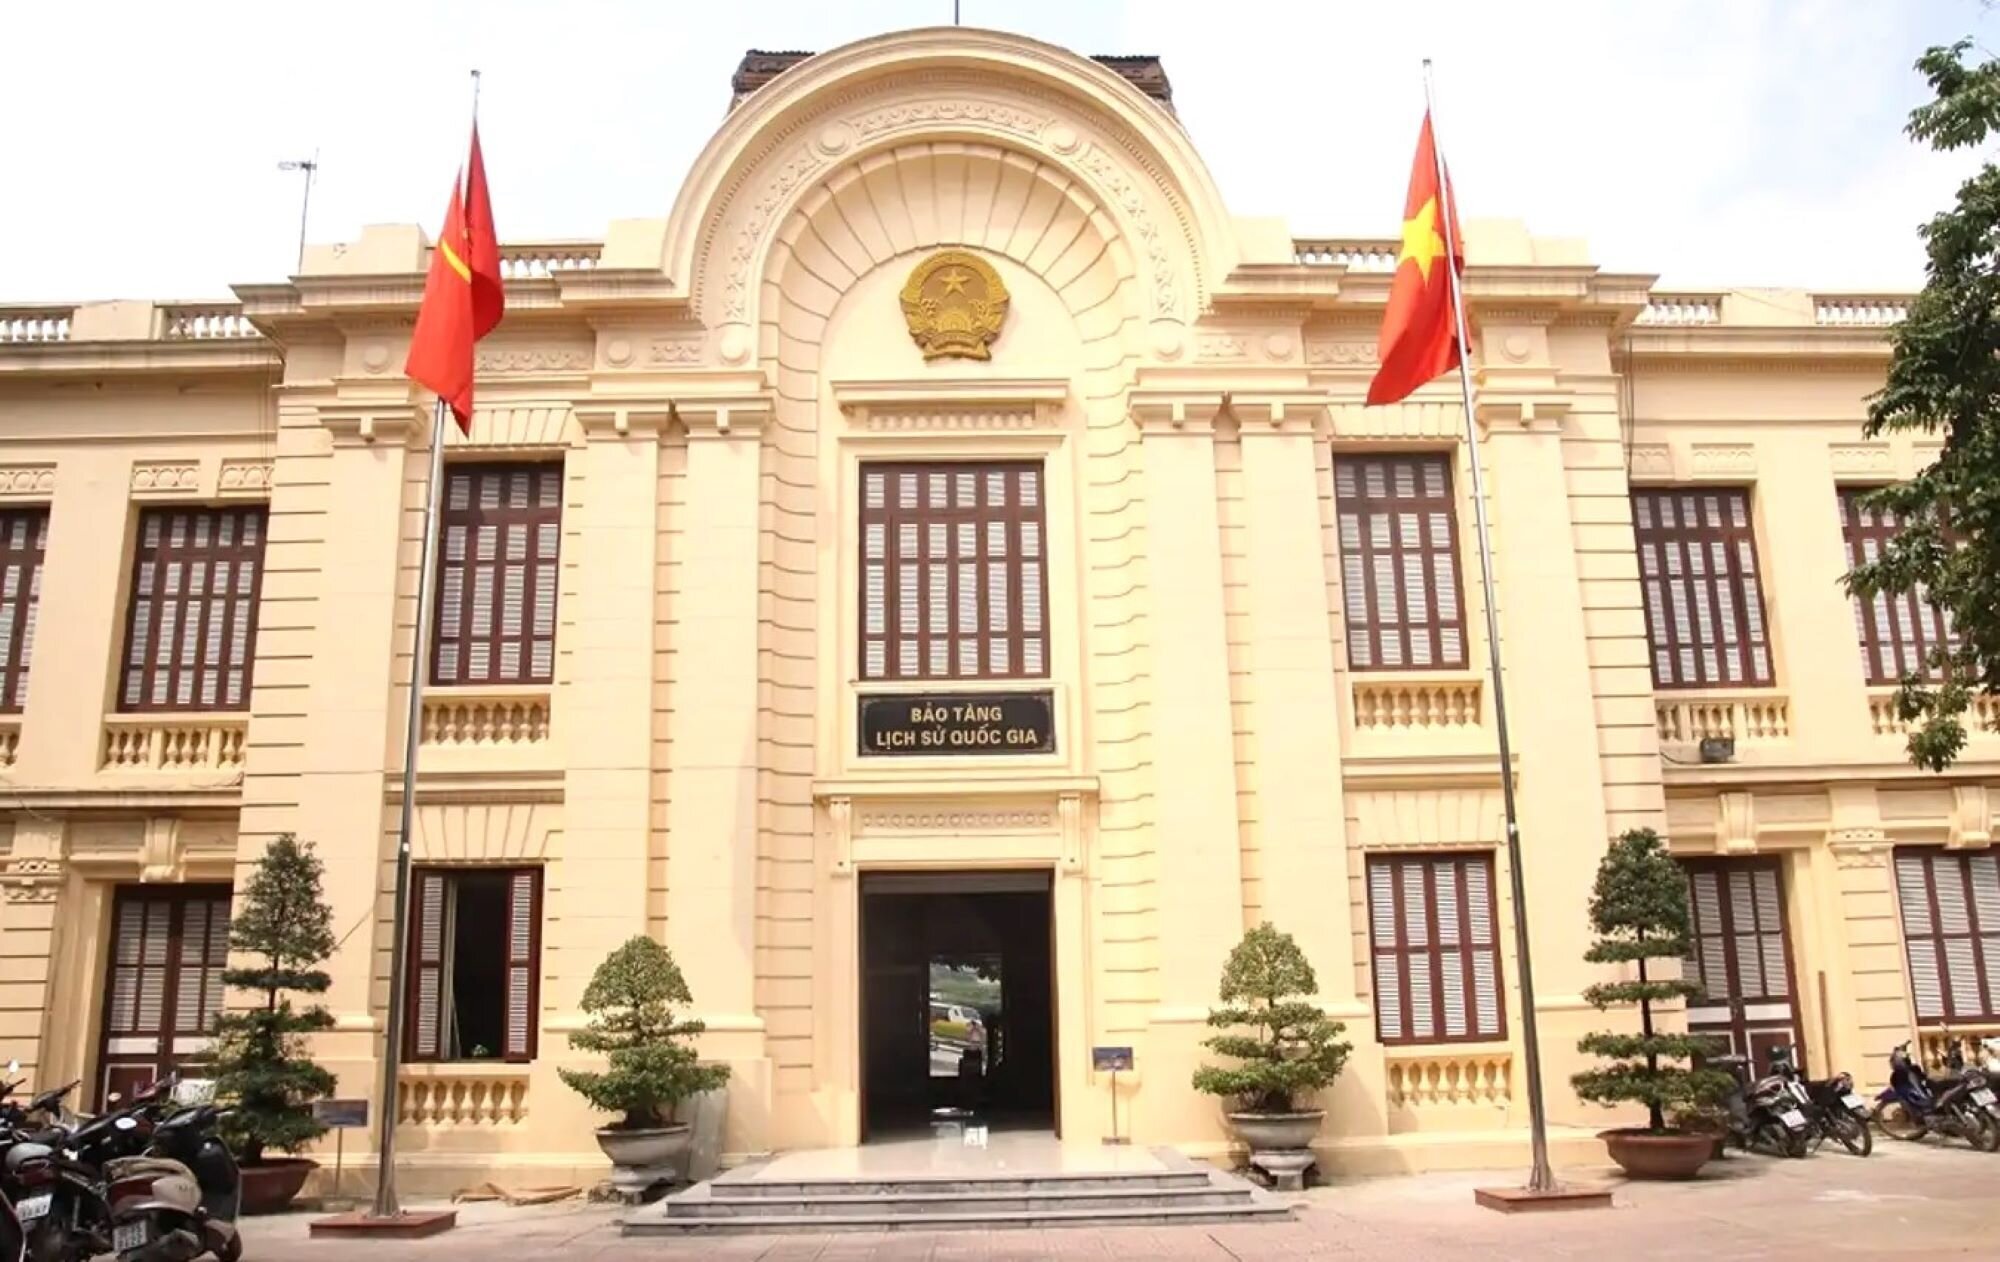 Bảo Tàng Lịch Sử Quốc Gia - Cơ sở 216 Trần Quang Khải. (Ảnh: Bảo tàng Lịch sử Quốc gia).